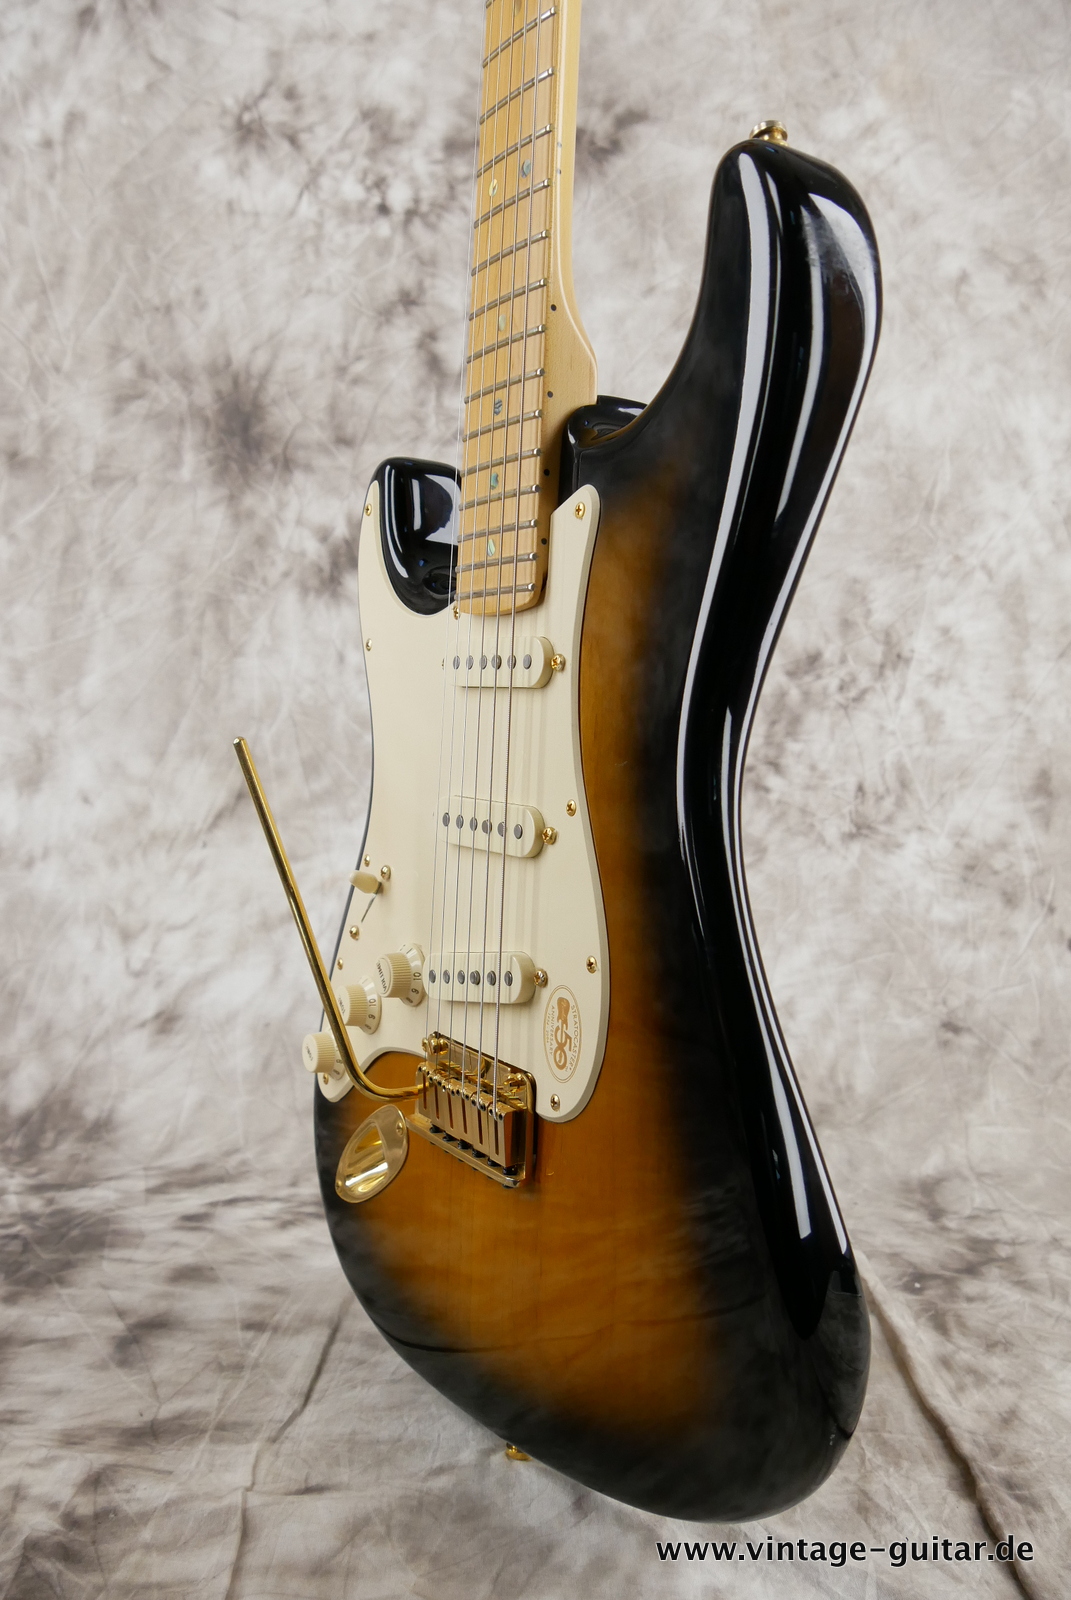 Fender_Stratocaster_deluxe_50th_anniversary__left_hand_sunburst_tweed_case_2004-010.JPG